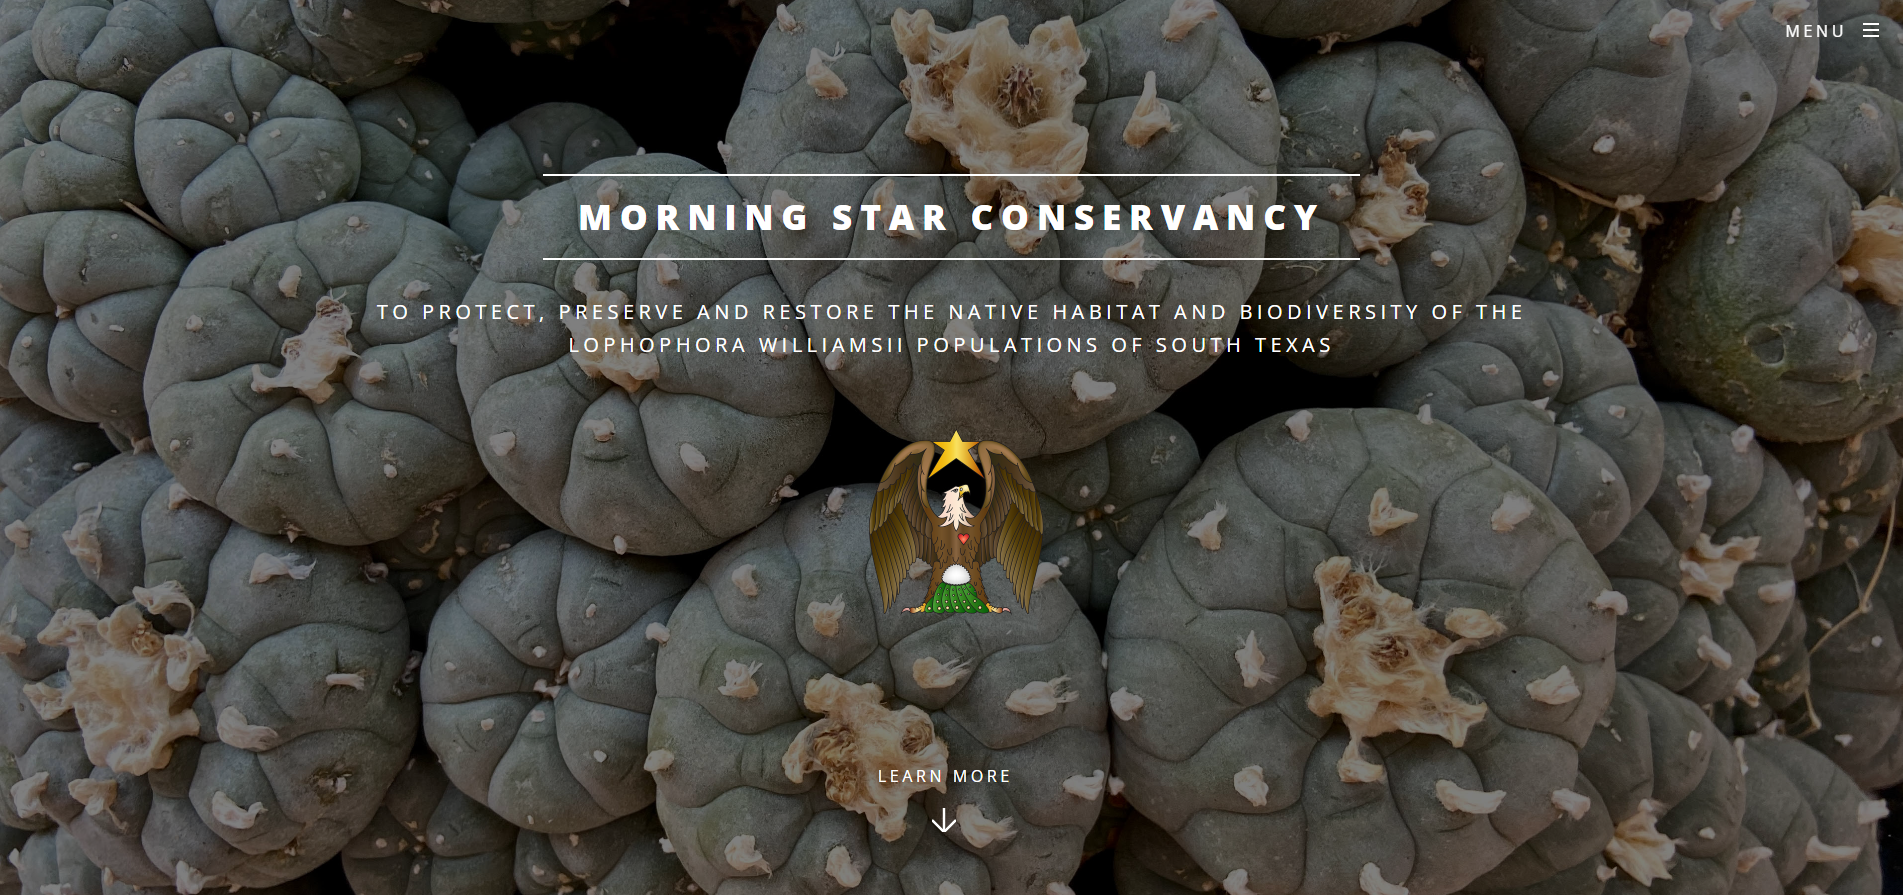 Morning Star Conservancy website